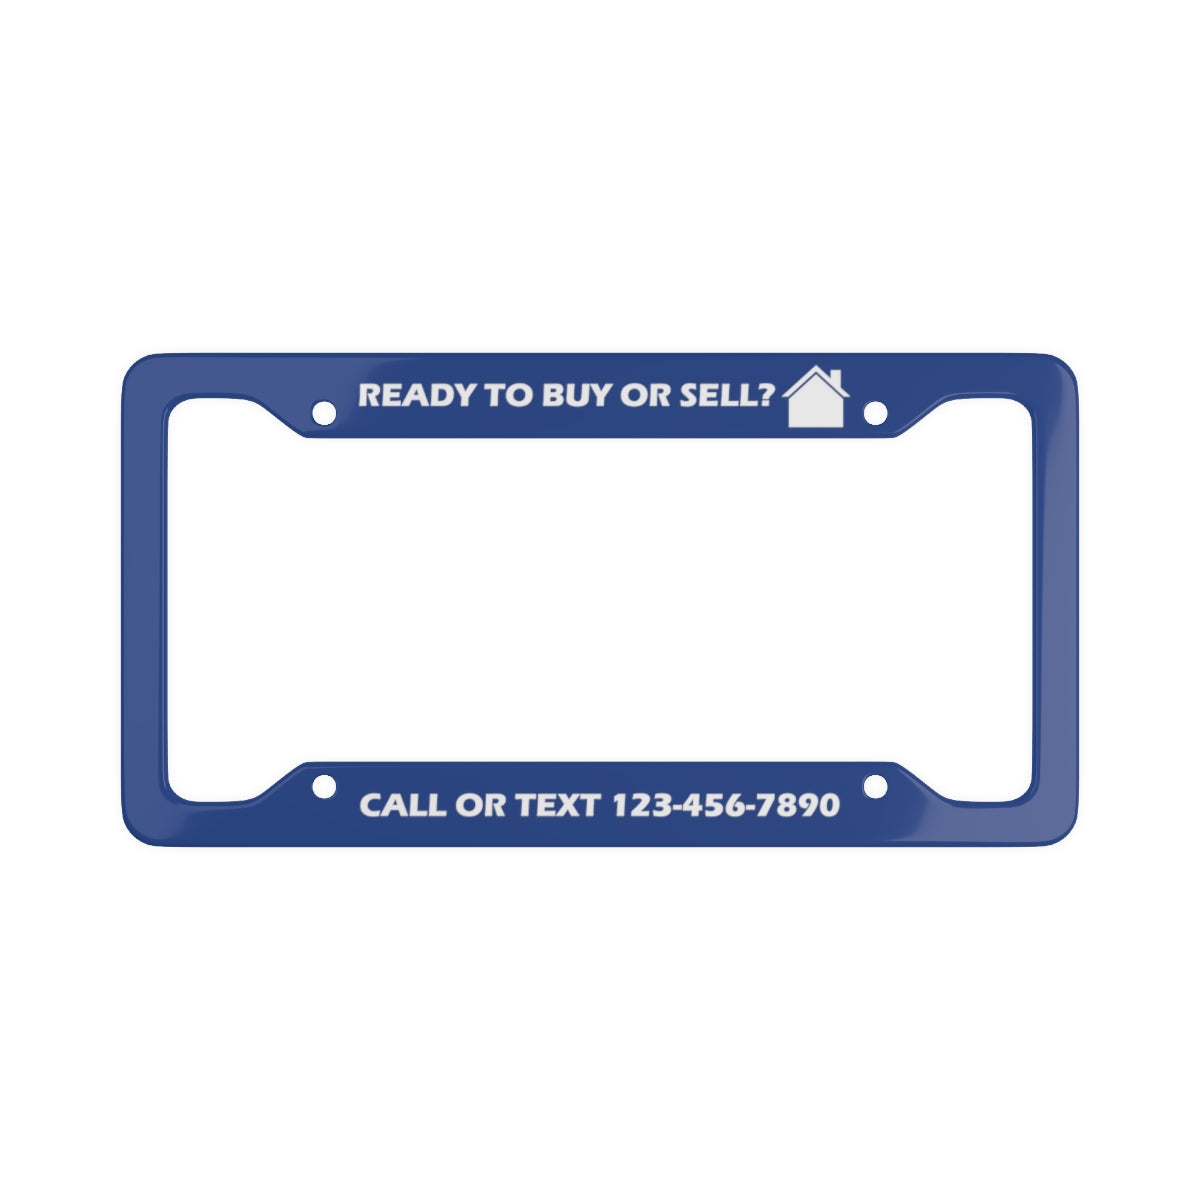 Custom License Plate Frame - Buy/Sell - Blue